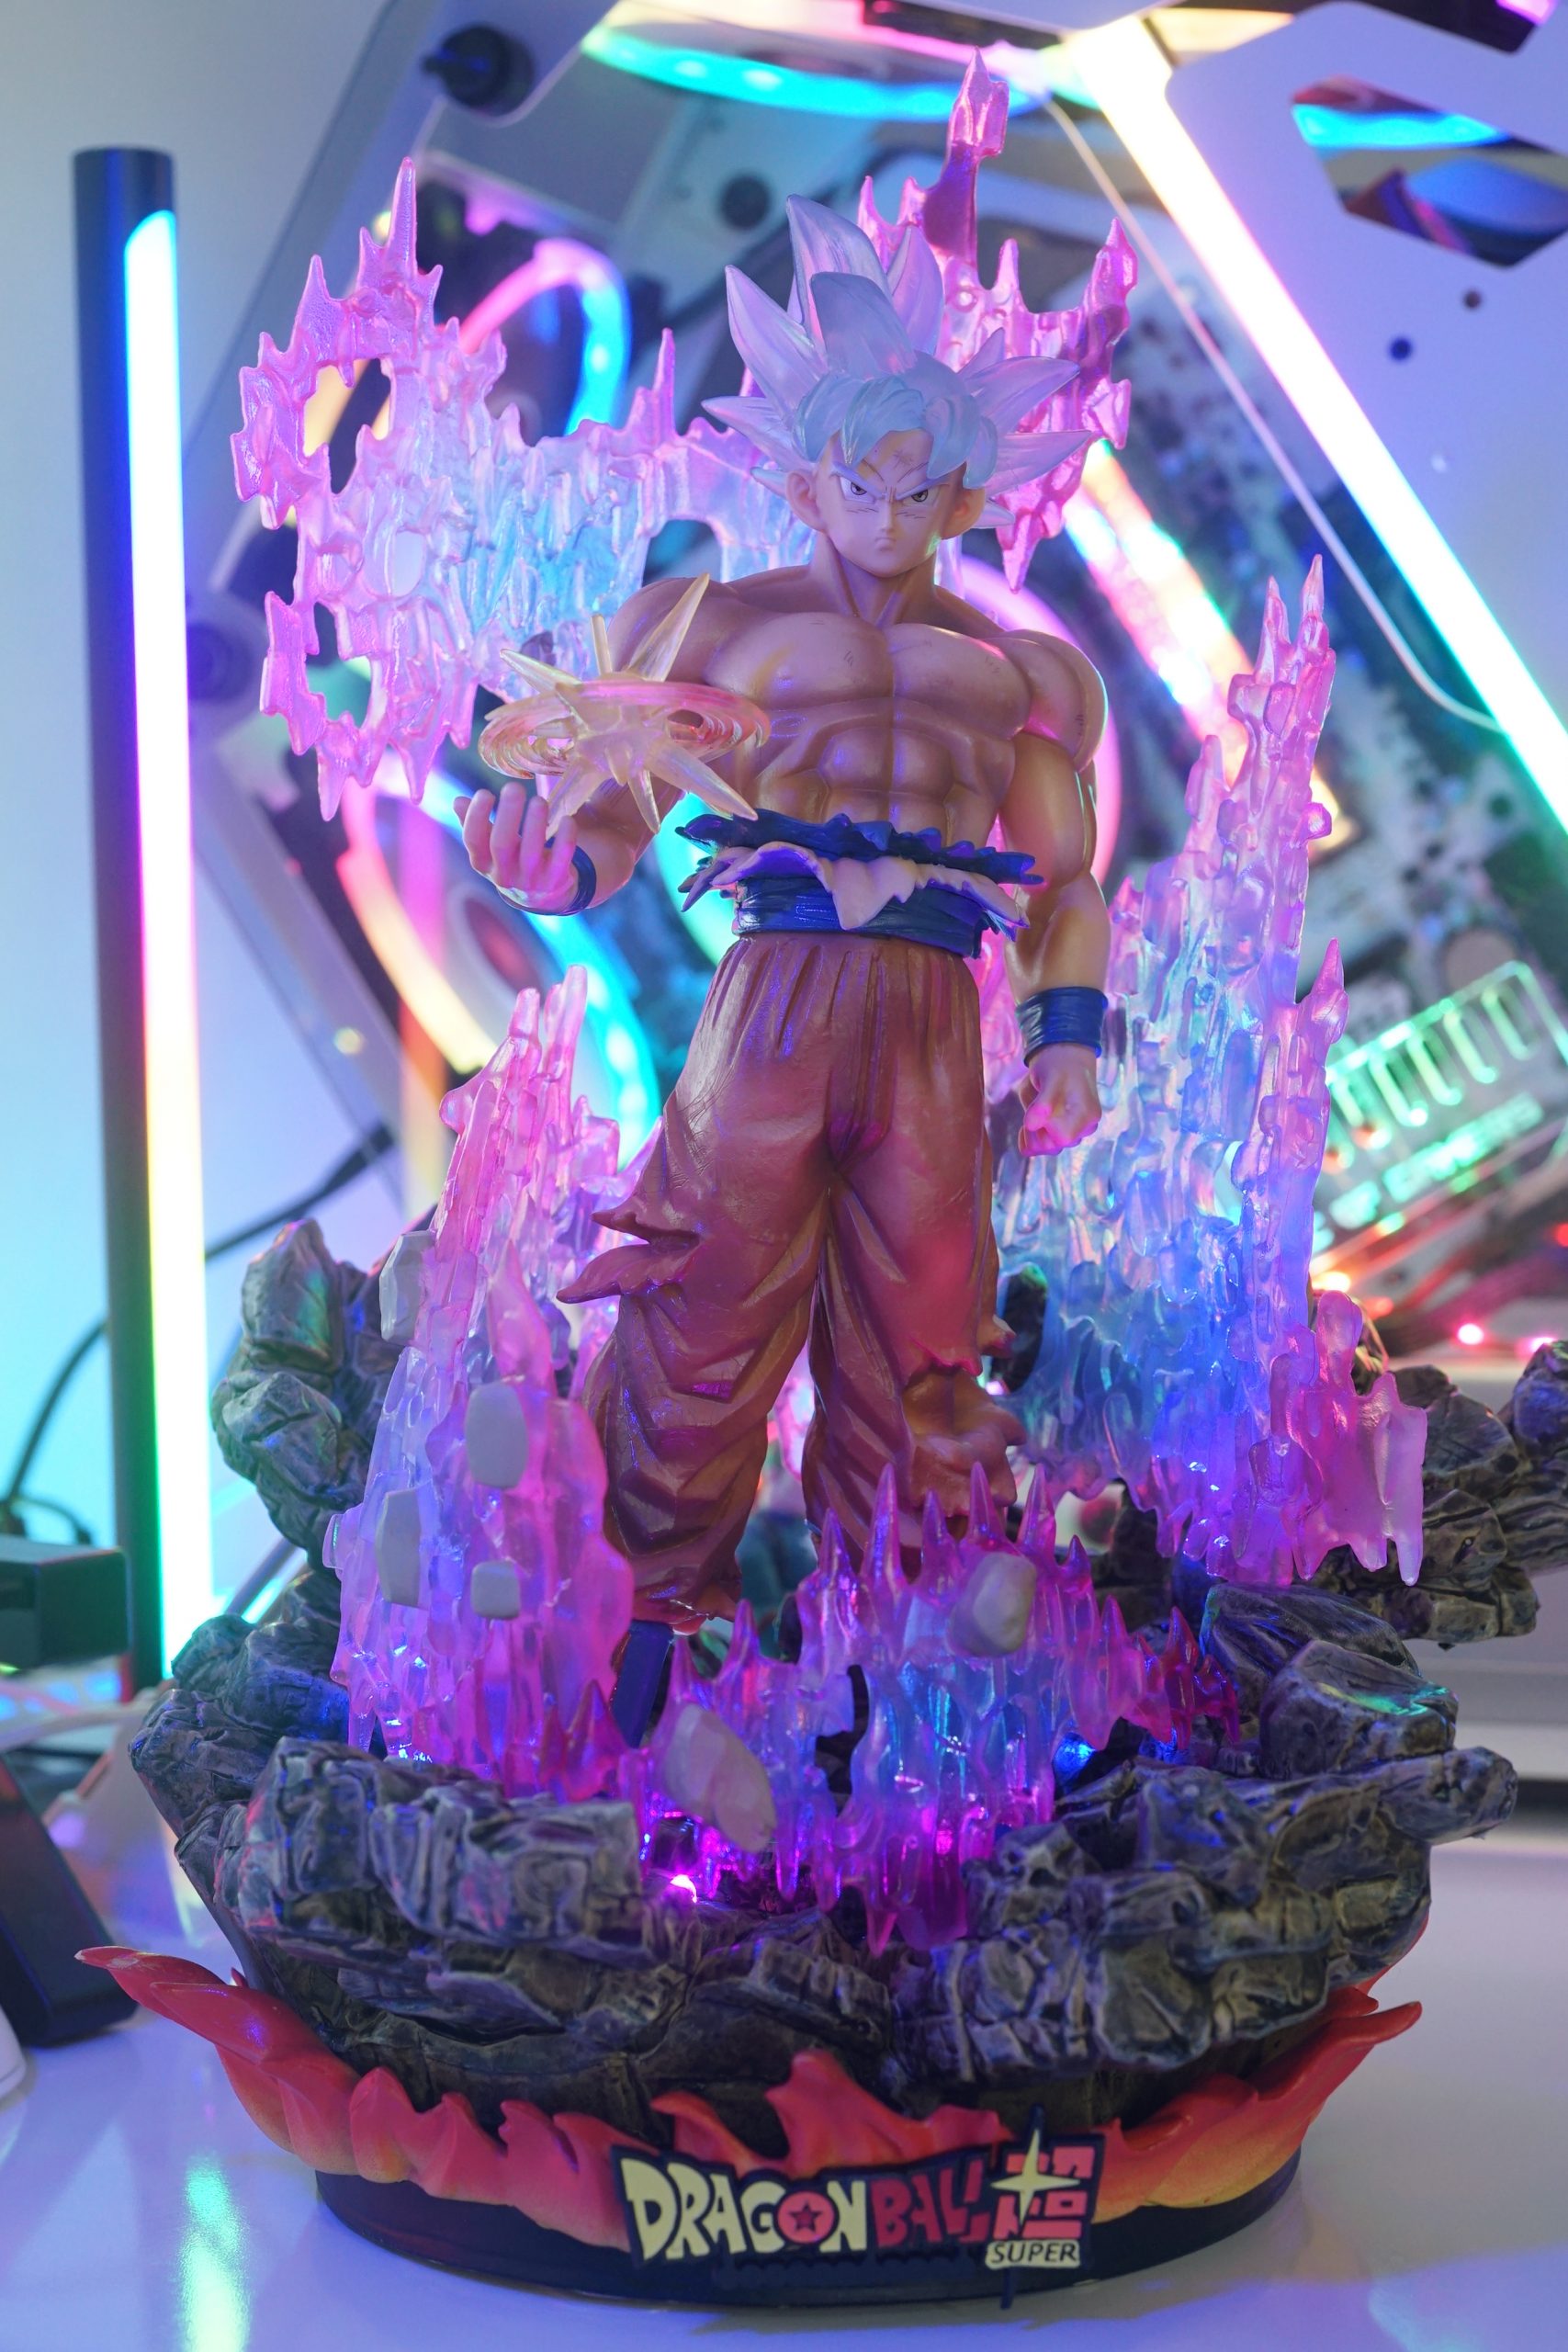 Bạn yêu thích Mô hình đúng không? Bạn cũng là fan hâm mộ của Goku và bản năng vô cực của anh ấy phải không? Hãy xem ngay hình ảnh này để chiêm ngưỡng bức tượng Songoku với bản năng vô cực được tái hiện chân thật trong mô hình.